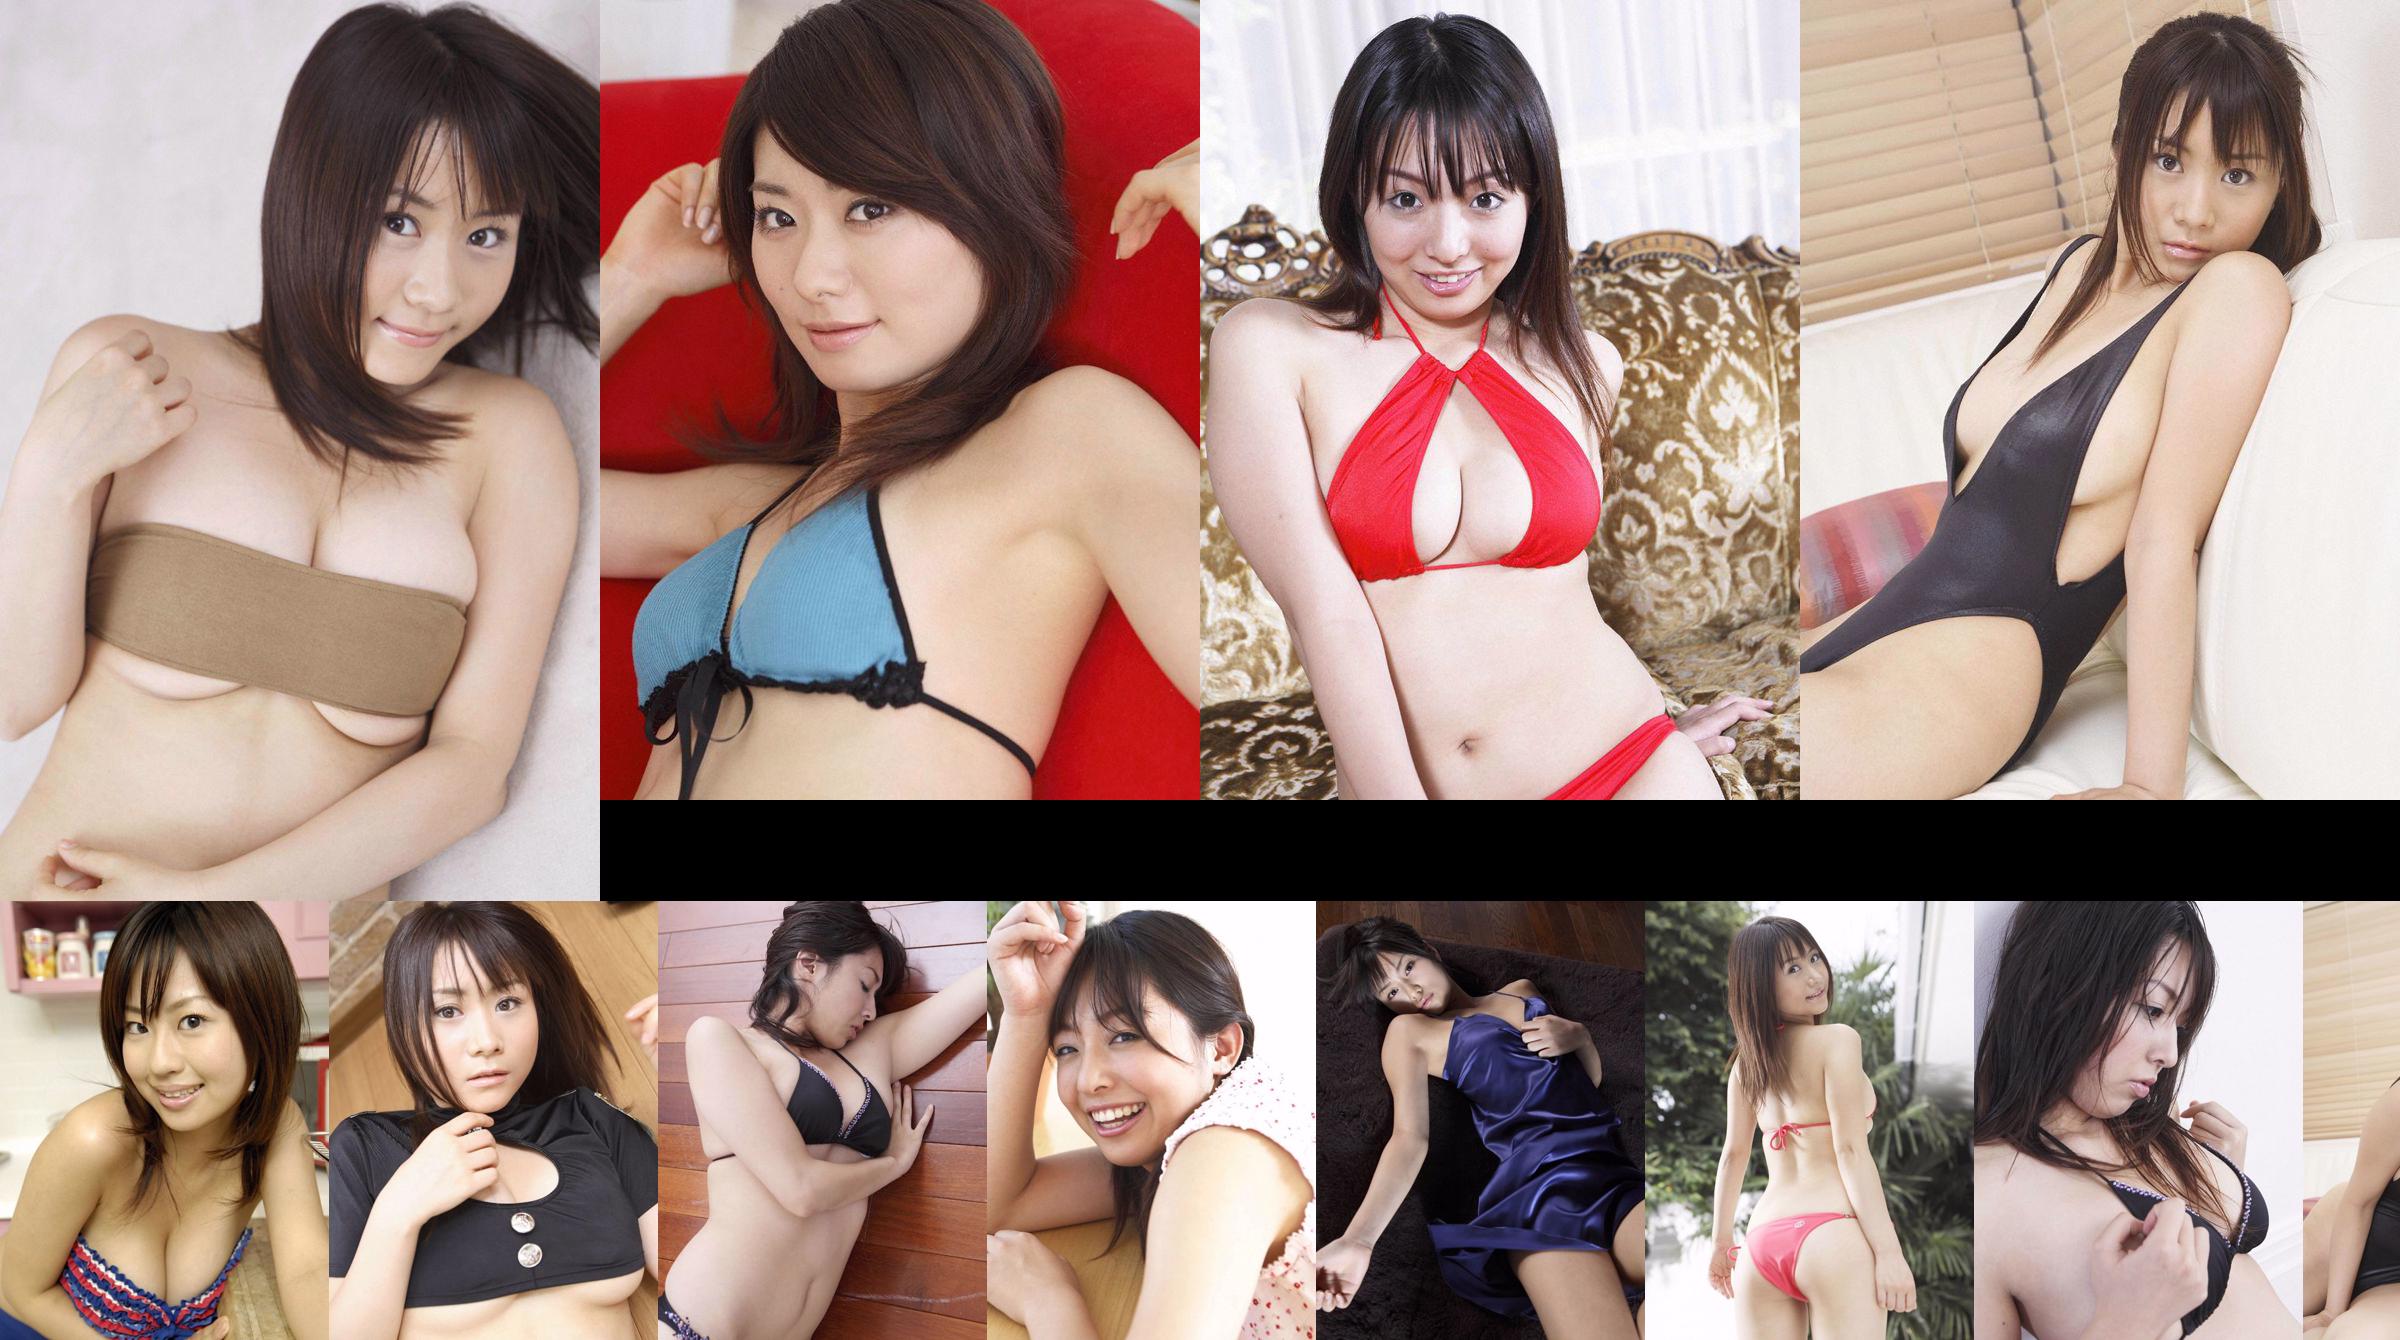 [Wanibooks] NO.37 Ai Arakawa, Hitomi Kaikawa, Hitomi Kitamura, Naomi I, Chii Matsuda Photo Collection No.cd174f Page 4